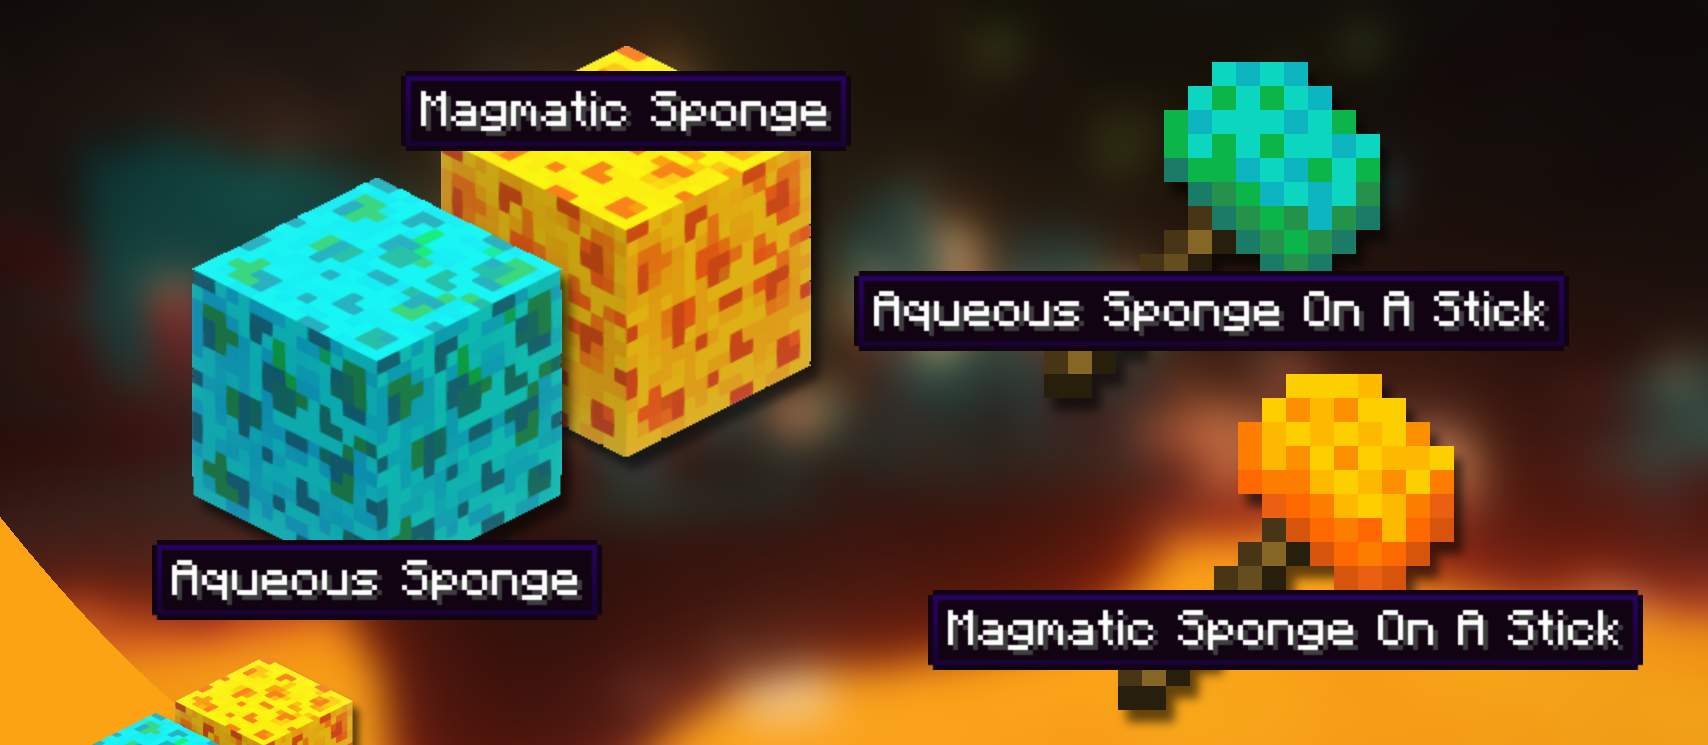 Permanent Sponges screenshot 1